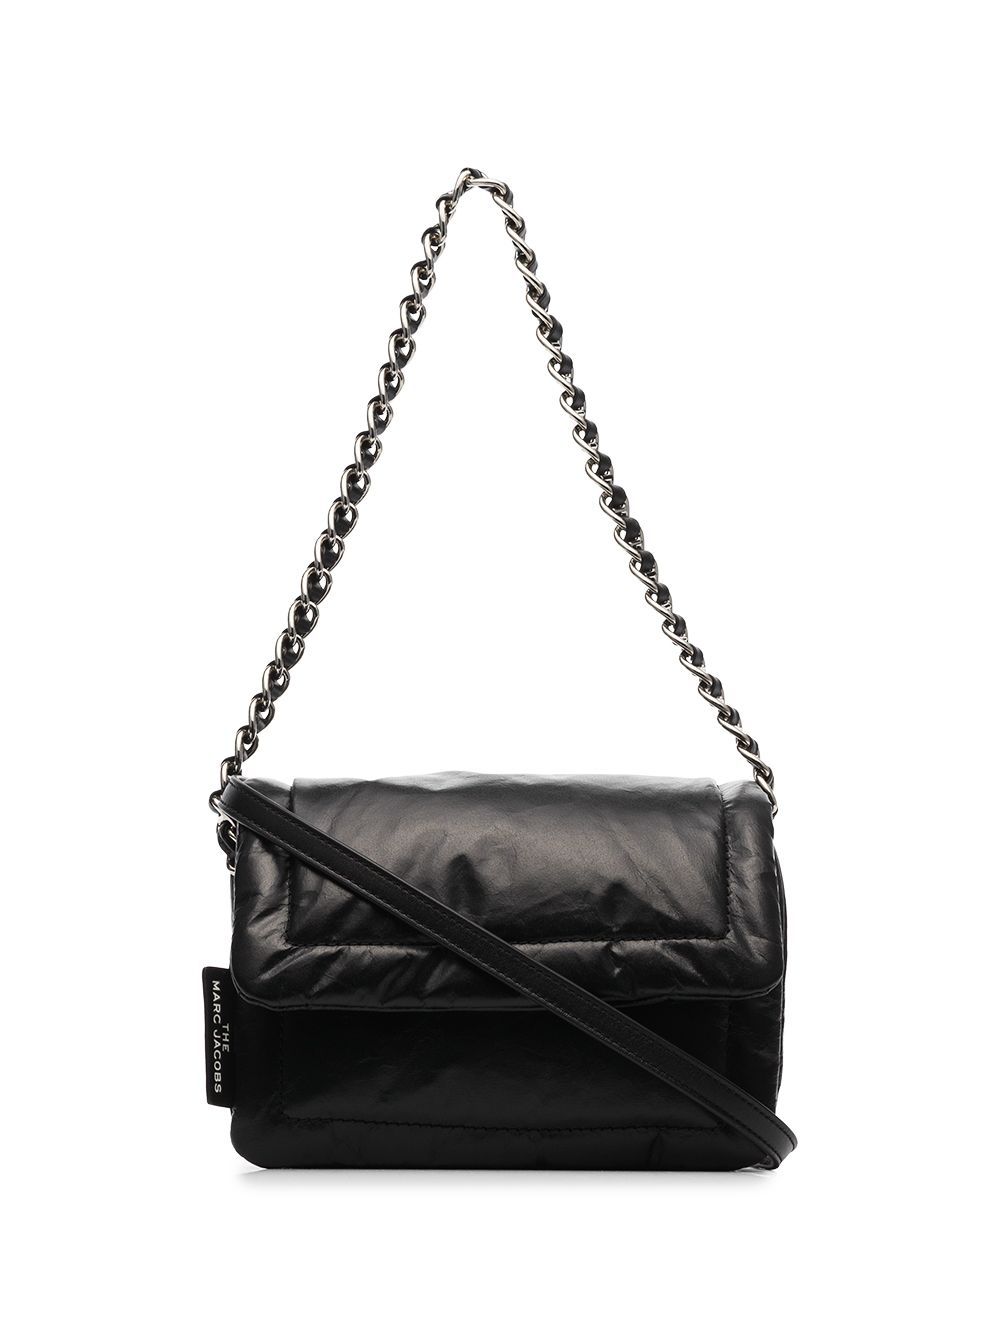 Marc Jacobs Women's The Mini Pillow Shoulder Bag